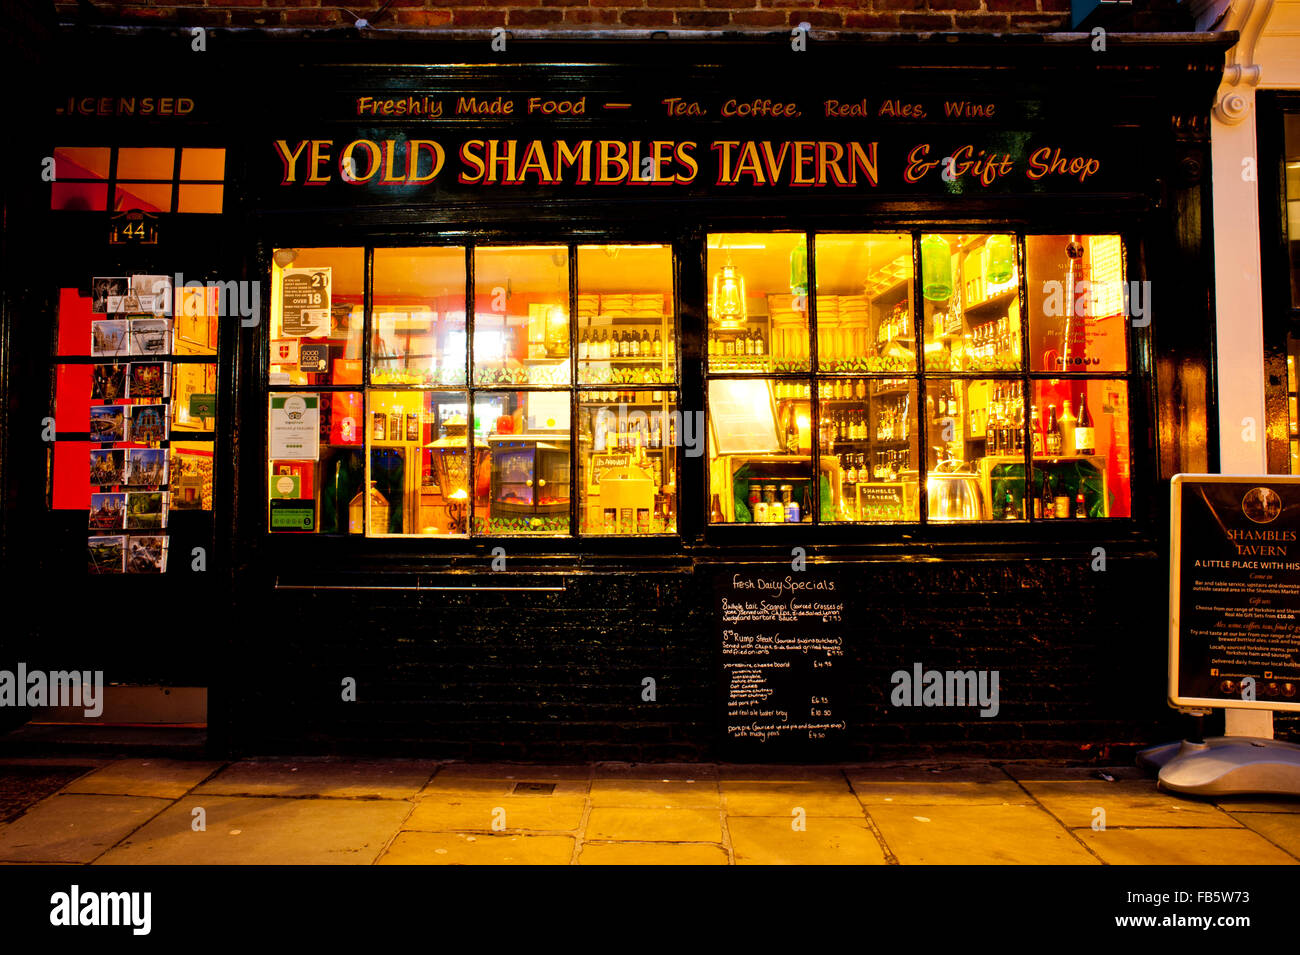 ye-old-shambles-tavern-shambles-york-FB5W73.jpg